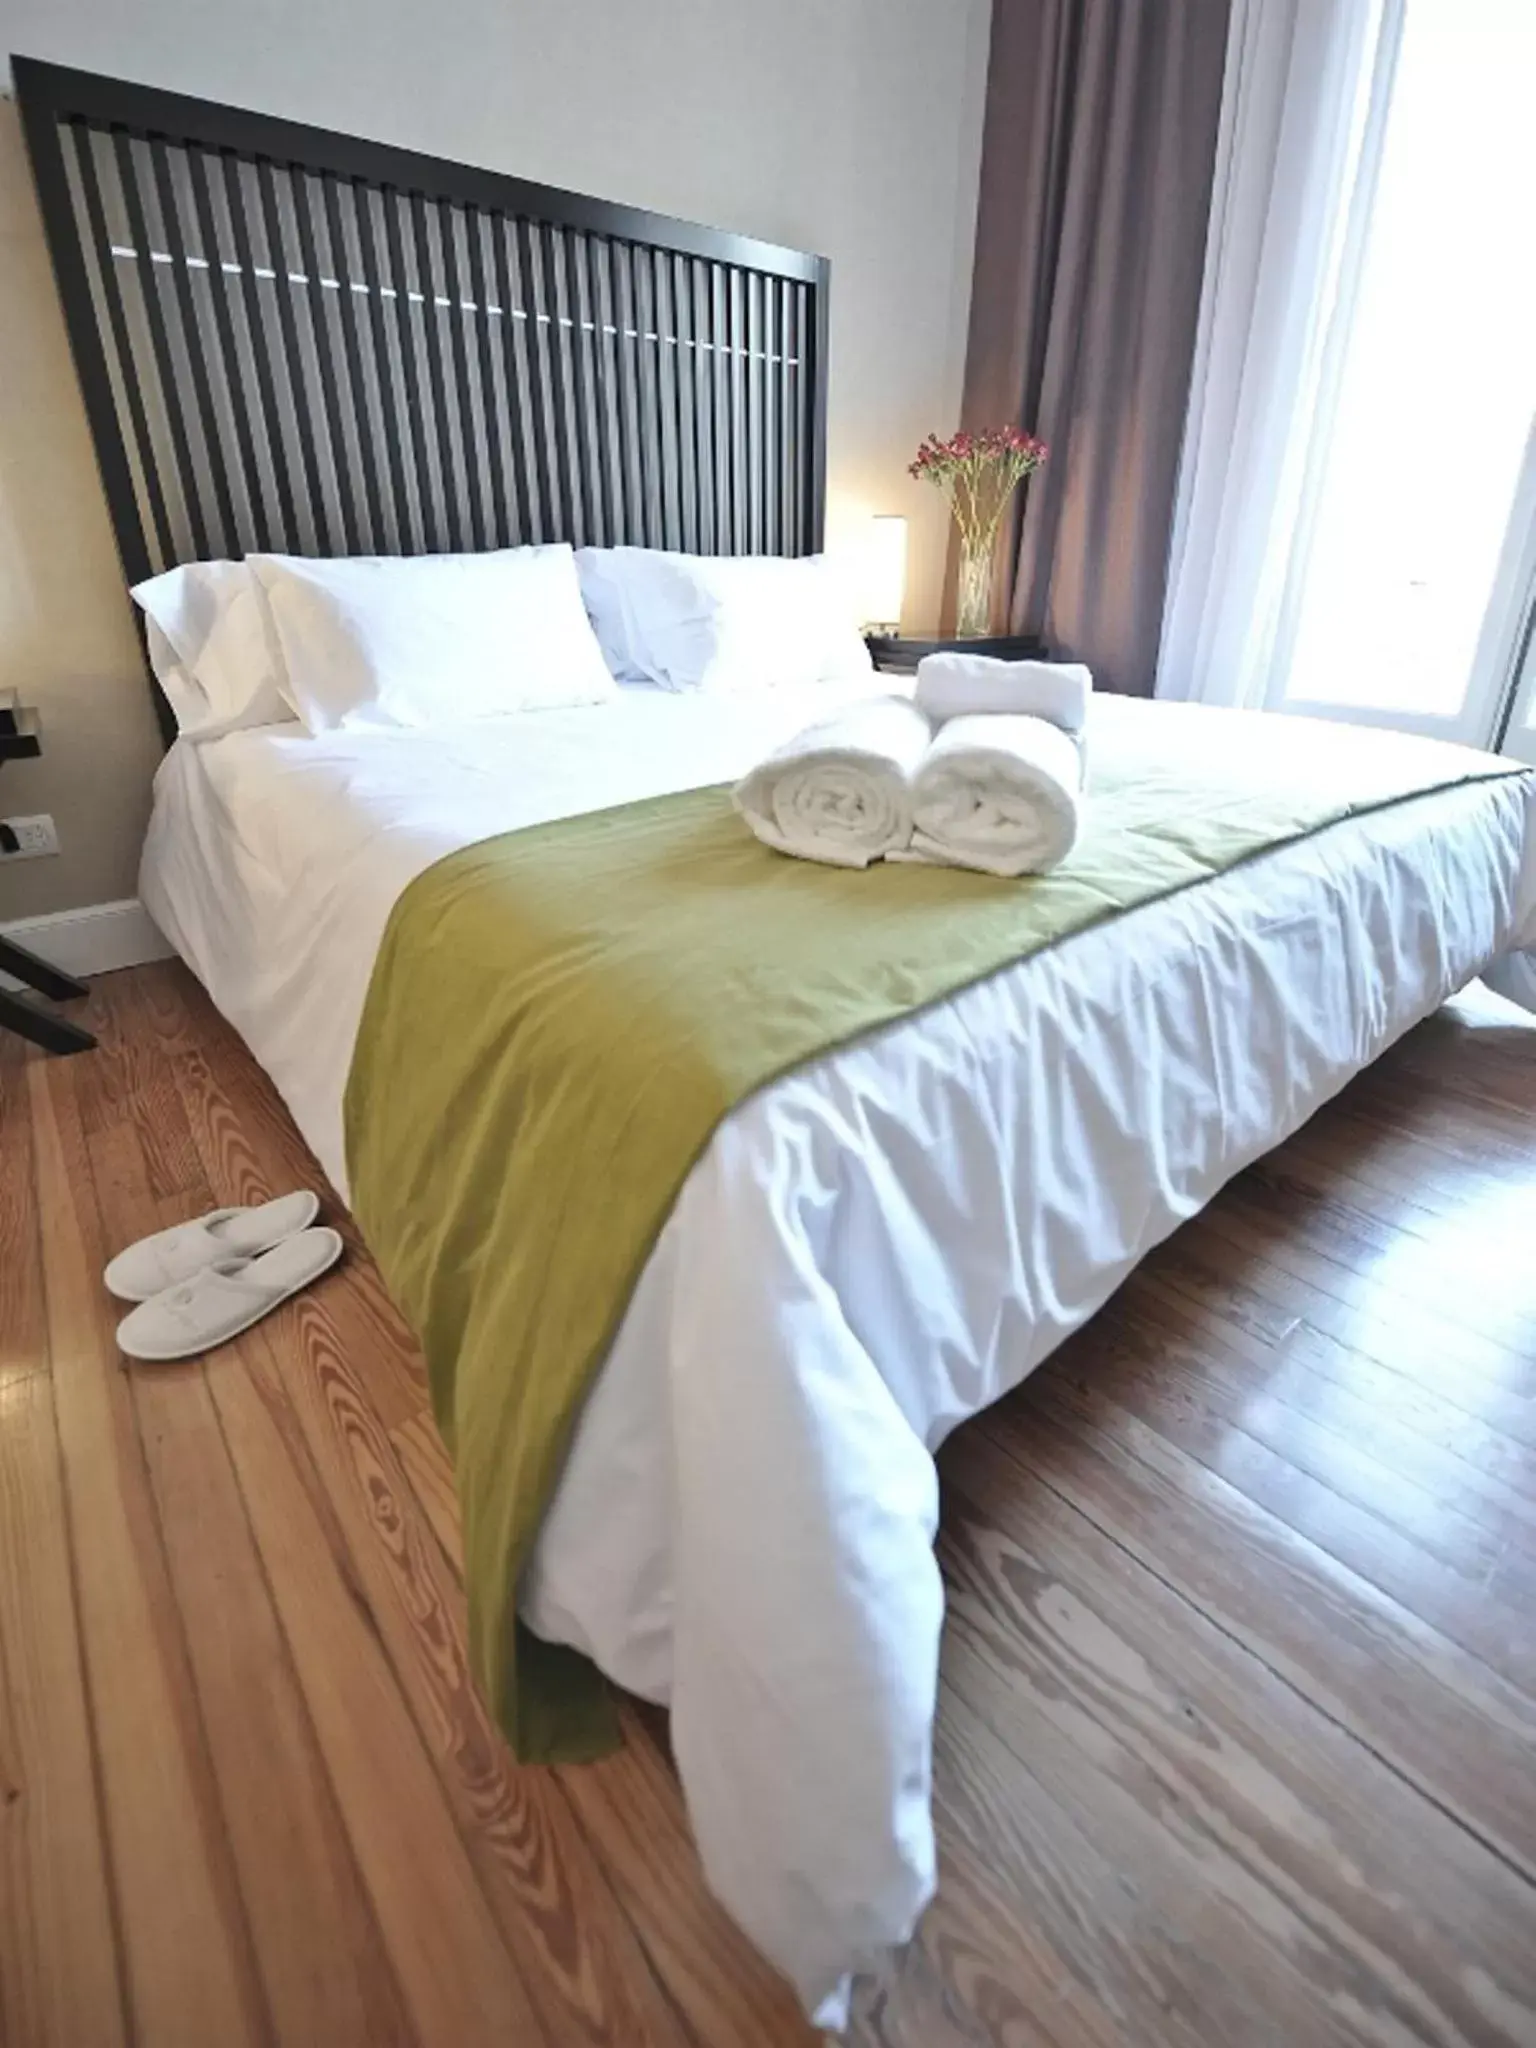 Bedroom, Bed in Patios de San Telmo